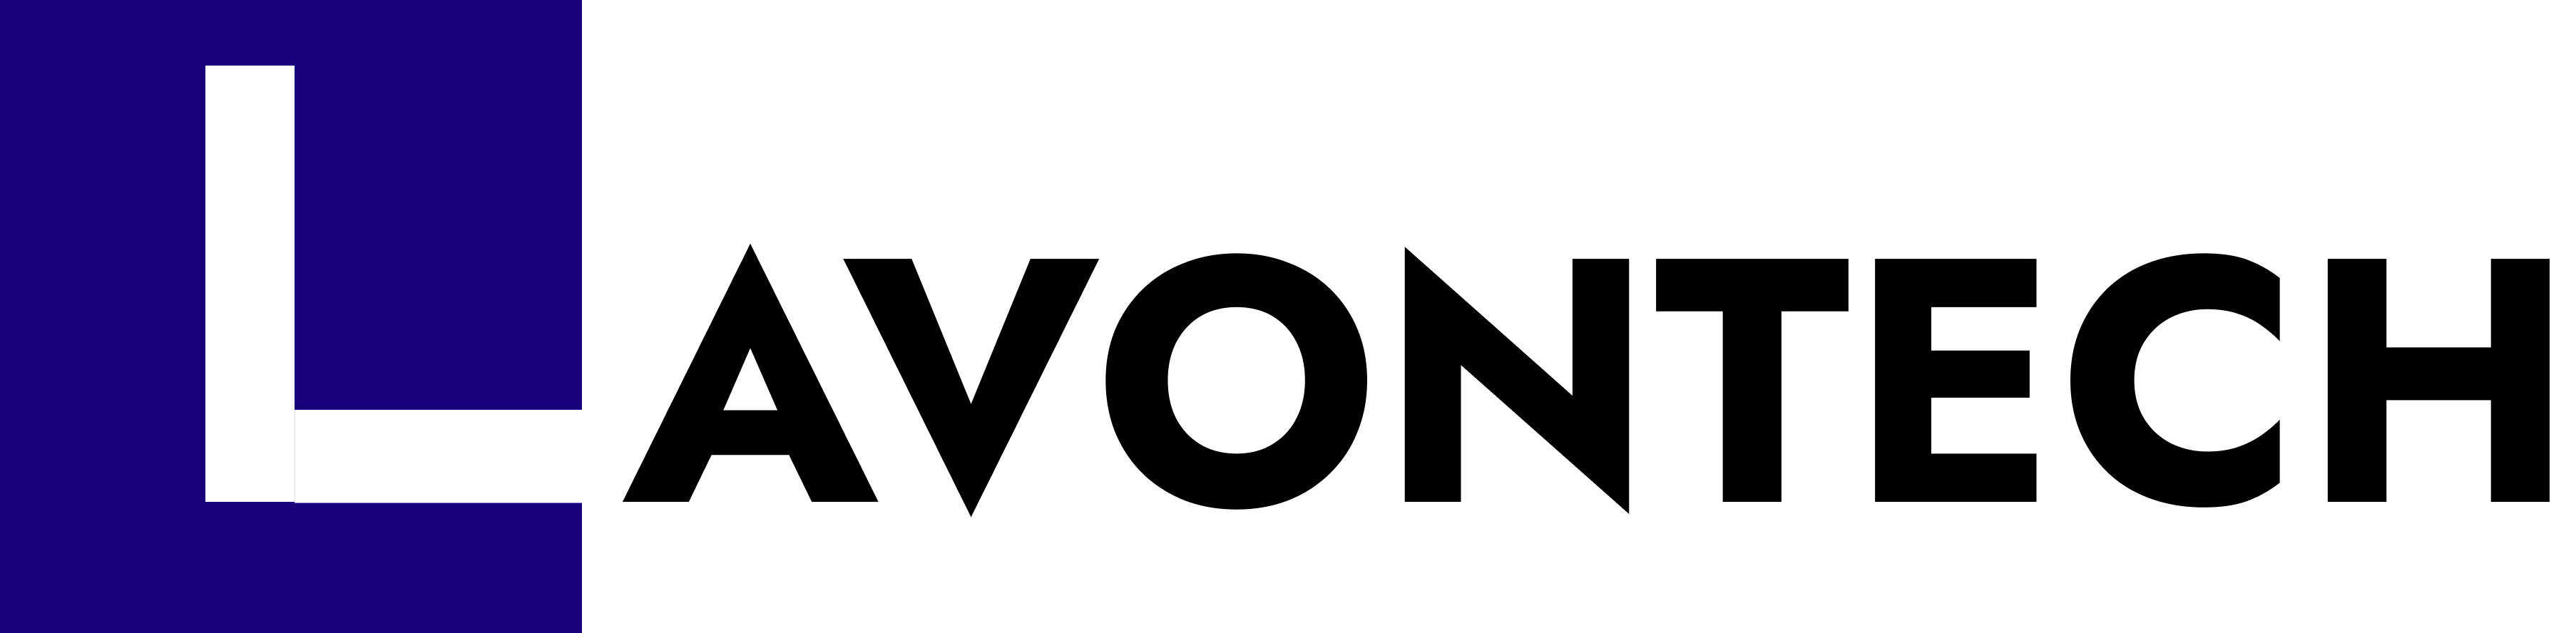 lavontech logo